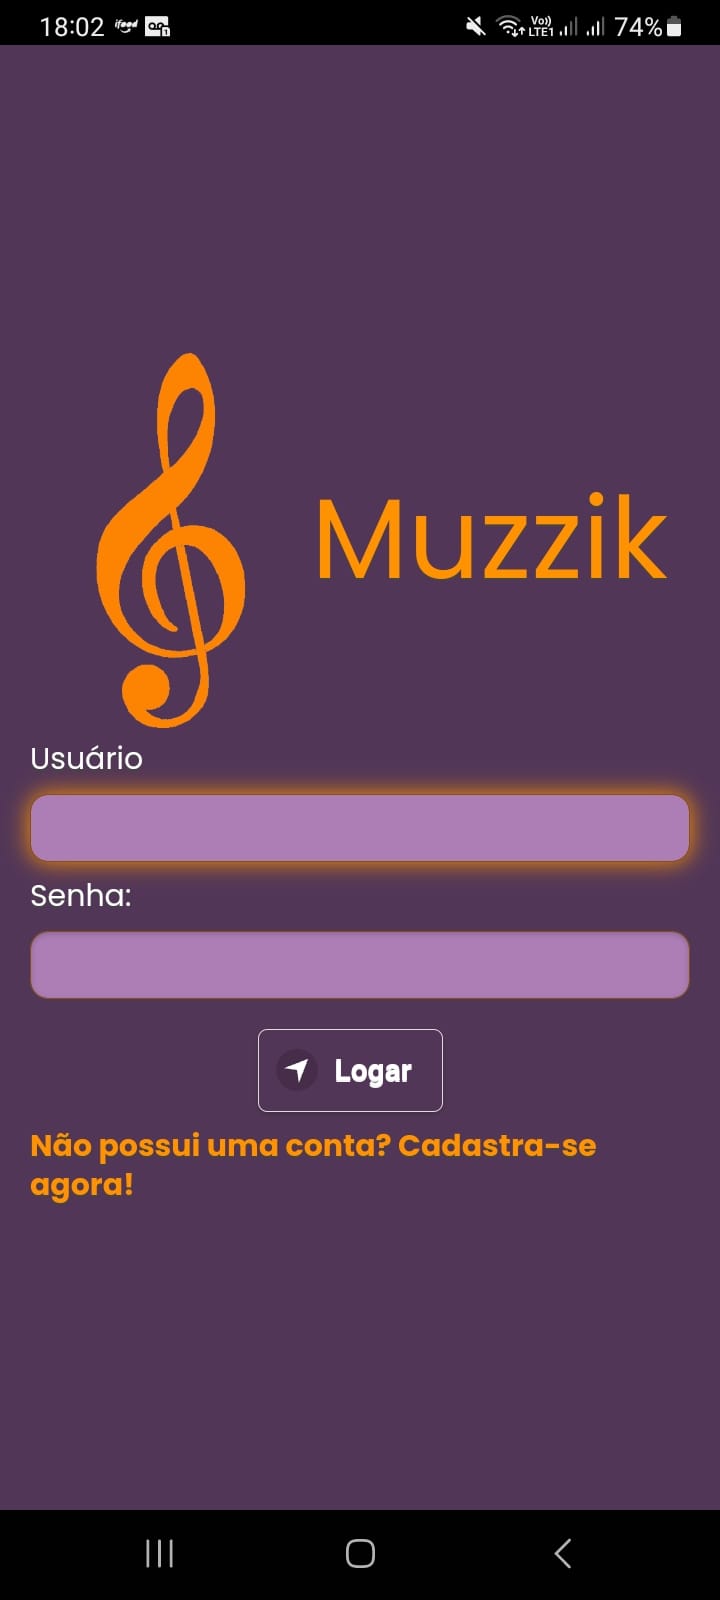 Imagem inicial do Projeto Muzzik, mostrando a tela de login